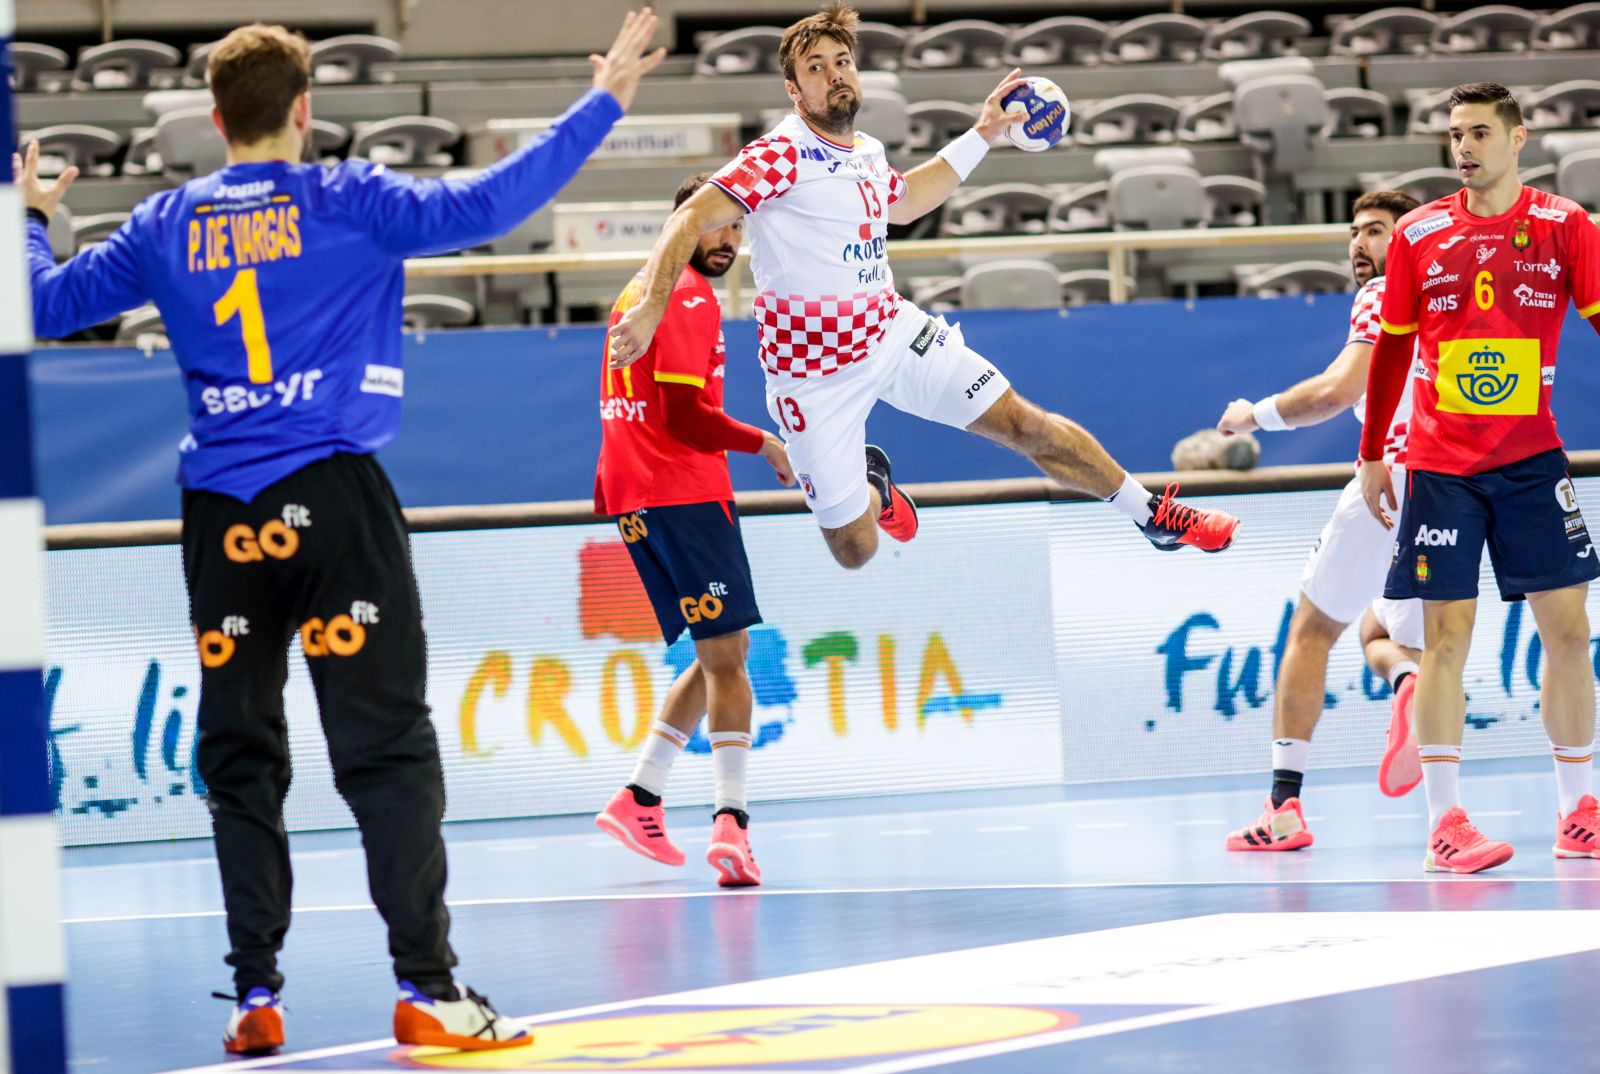 Poreč, 05.01.2021. - Utakmica EHF EURO Cupa između rukometaša Hrvatske i Španjolske. foto HINA/ HRS/ ml